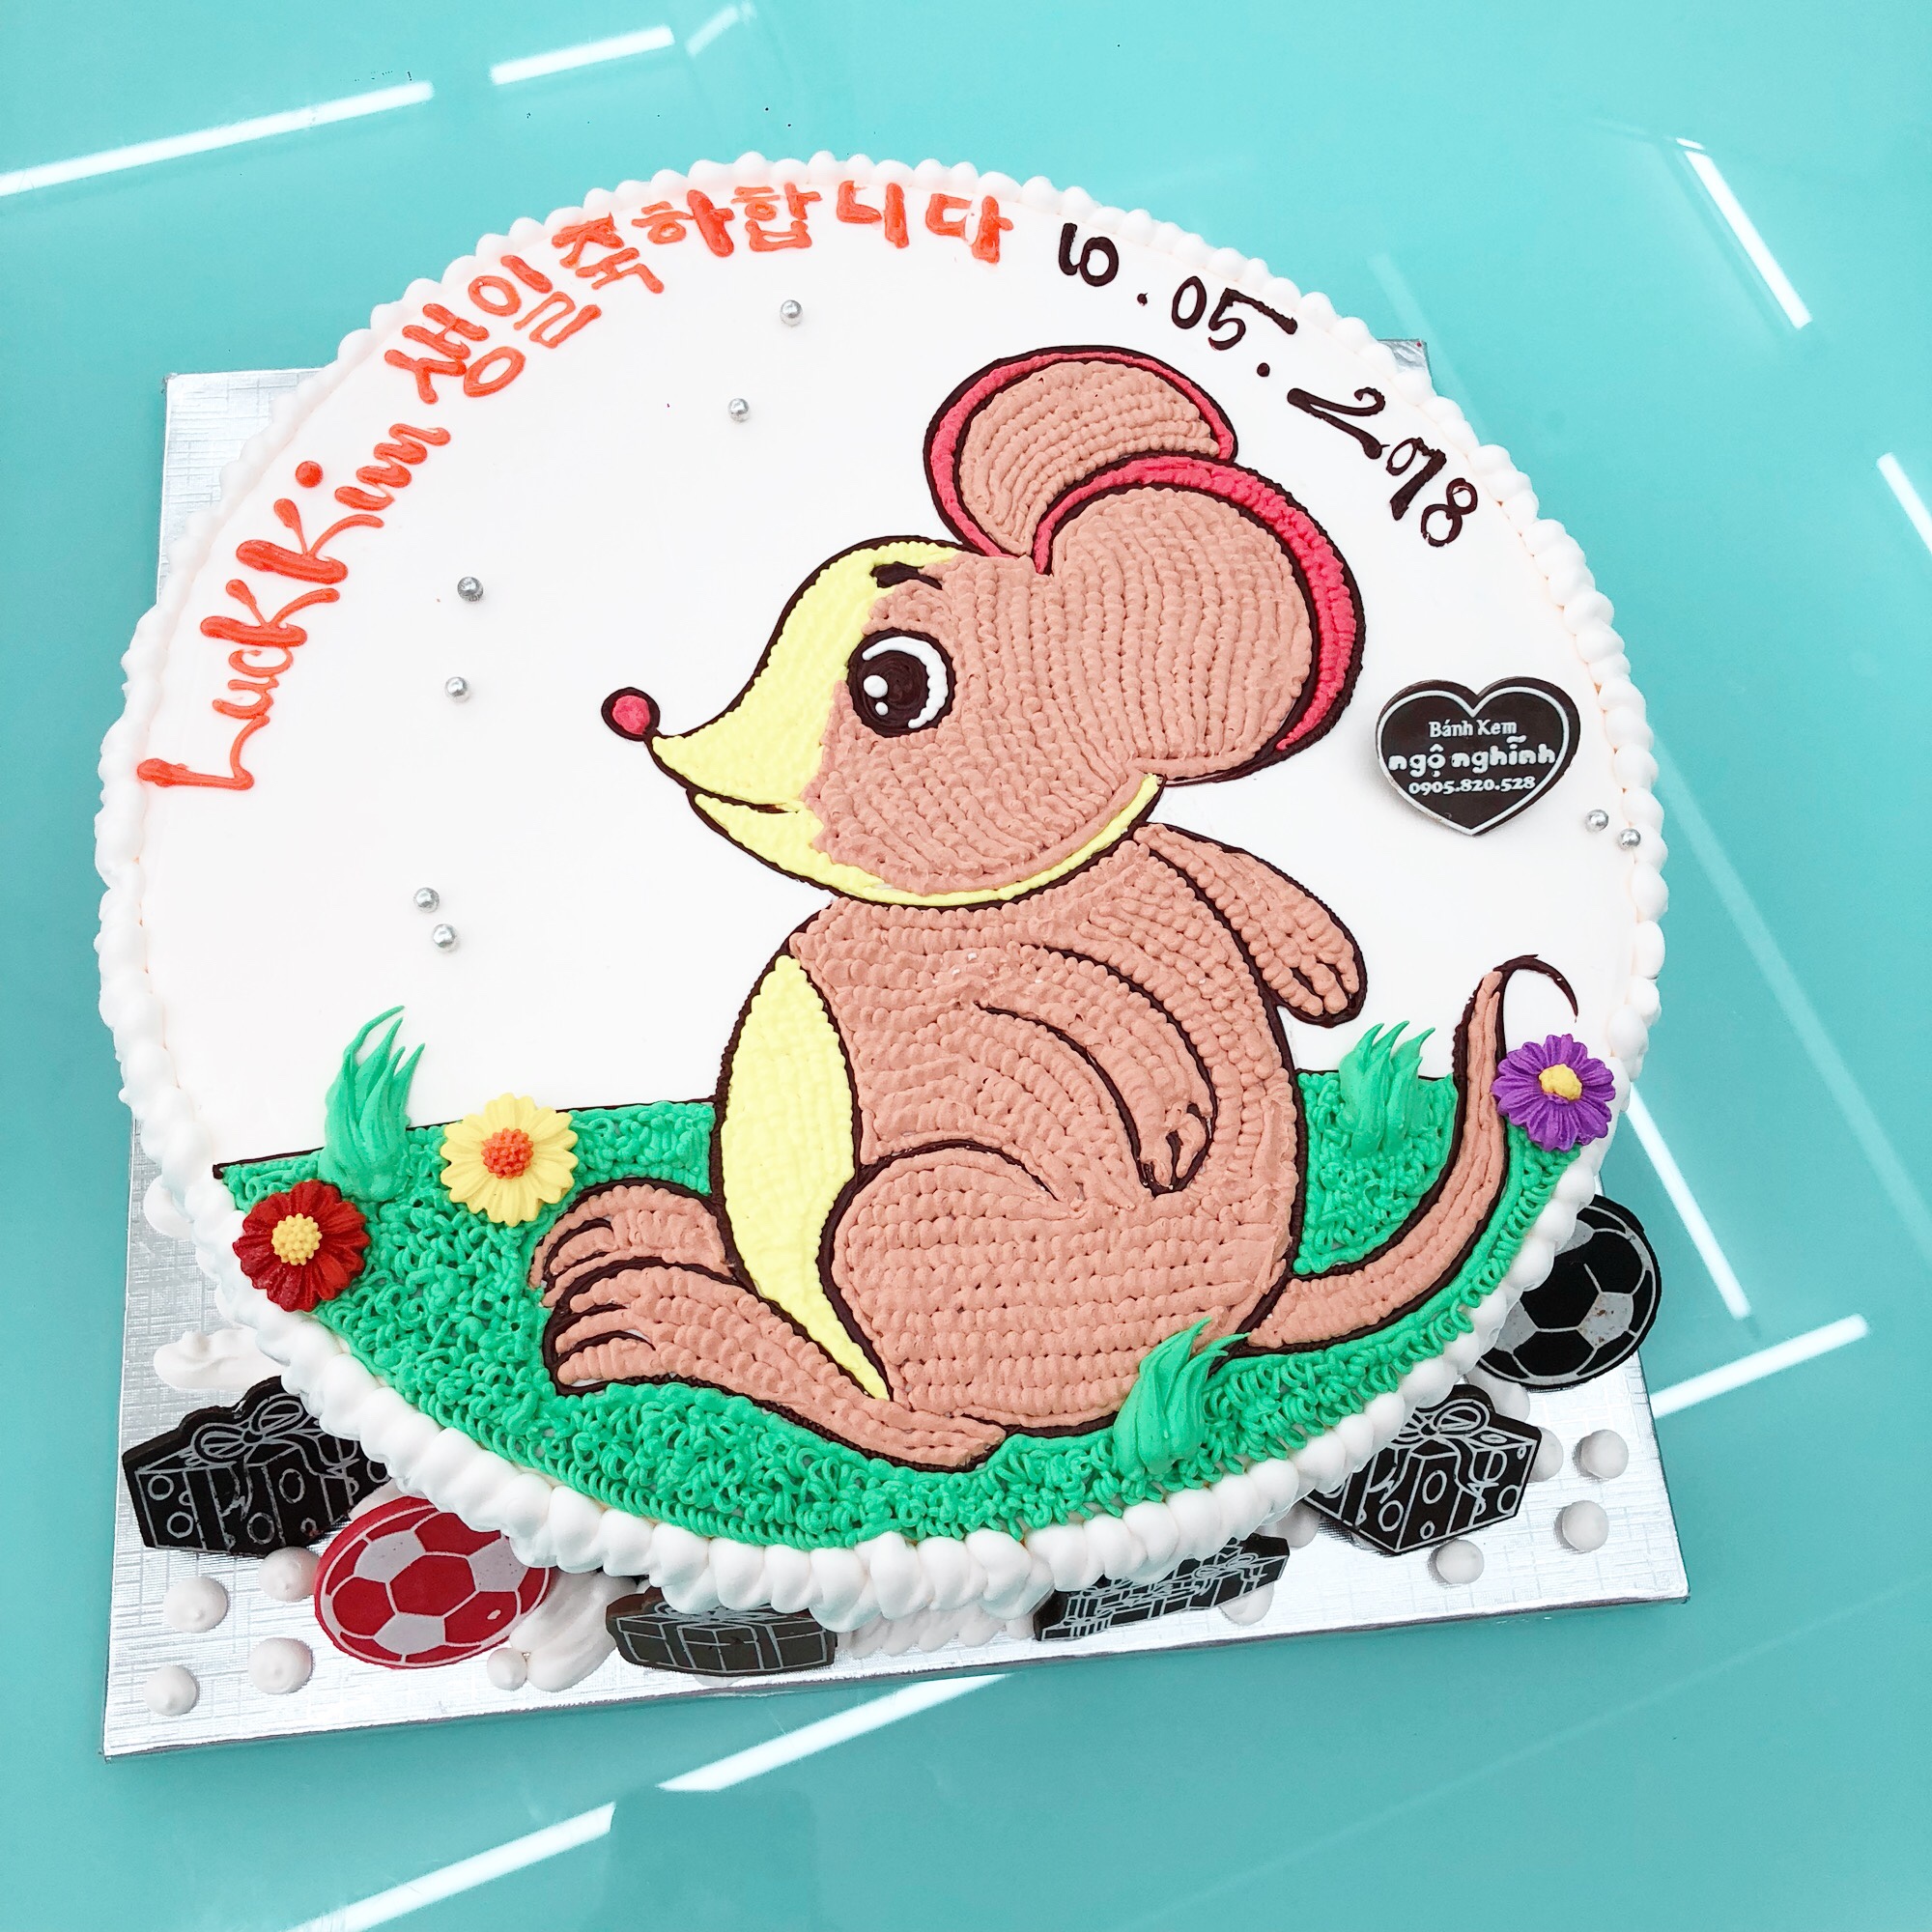 Hãy để chú ruột bật lên nhảy múa trong ngày sinh nhật của con - Chiếc bánh sinh nhật đầy màu sắc và hình con chuột tuổi Tý sẽ mang đến cho các bé niềm vui và hạnh phúc không ngờ.